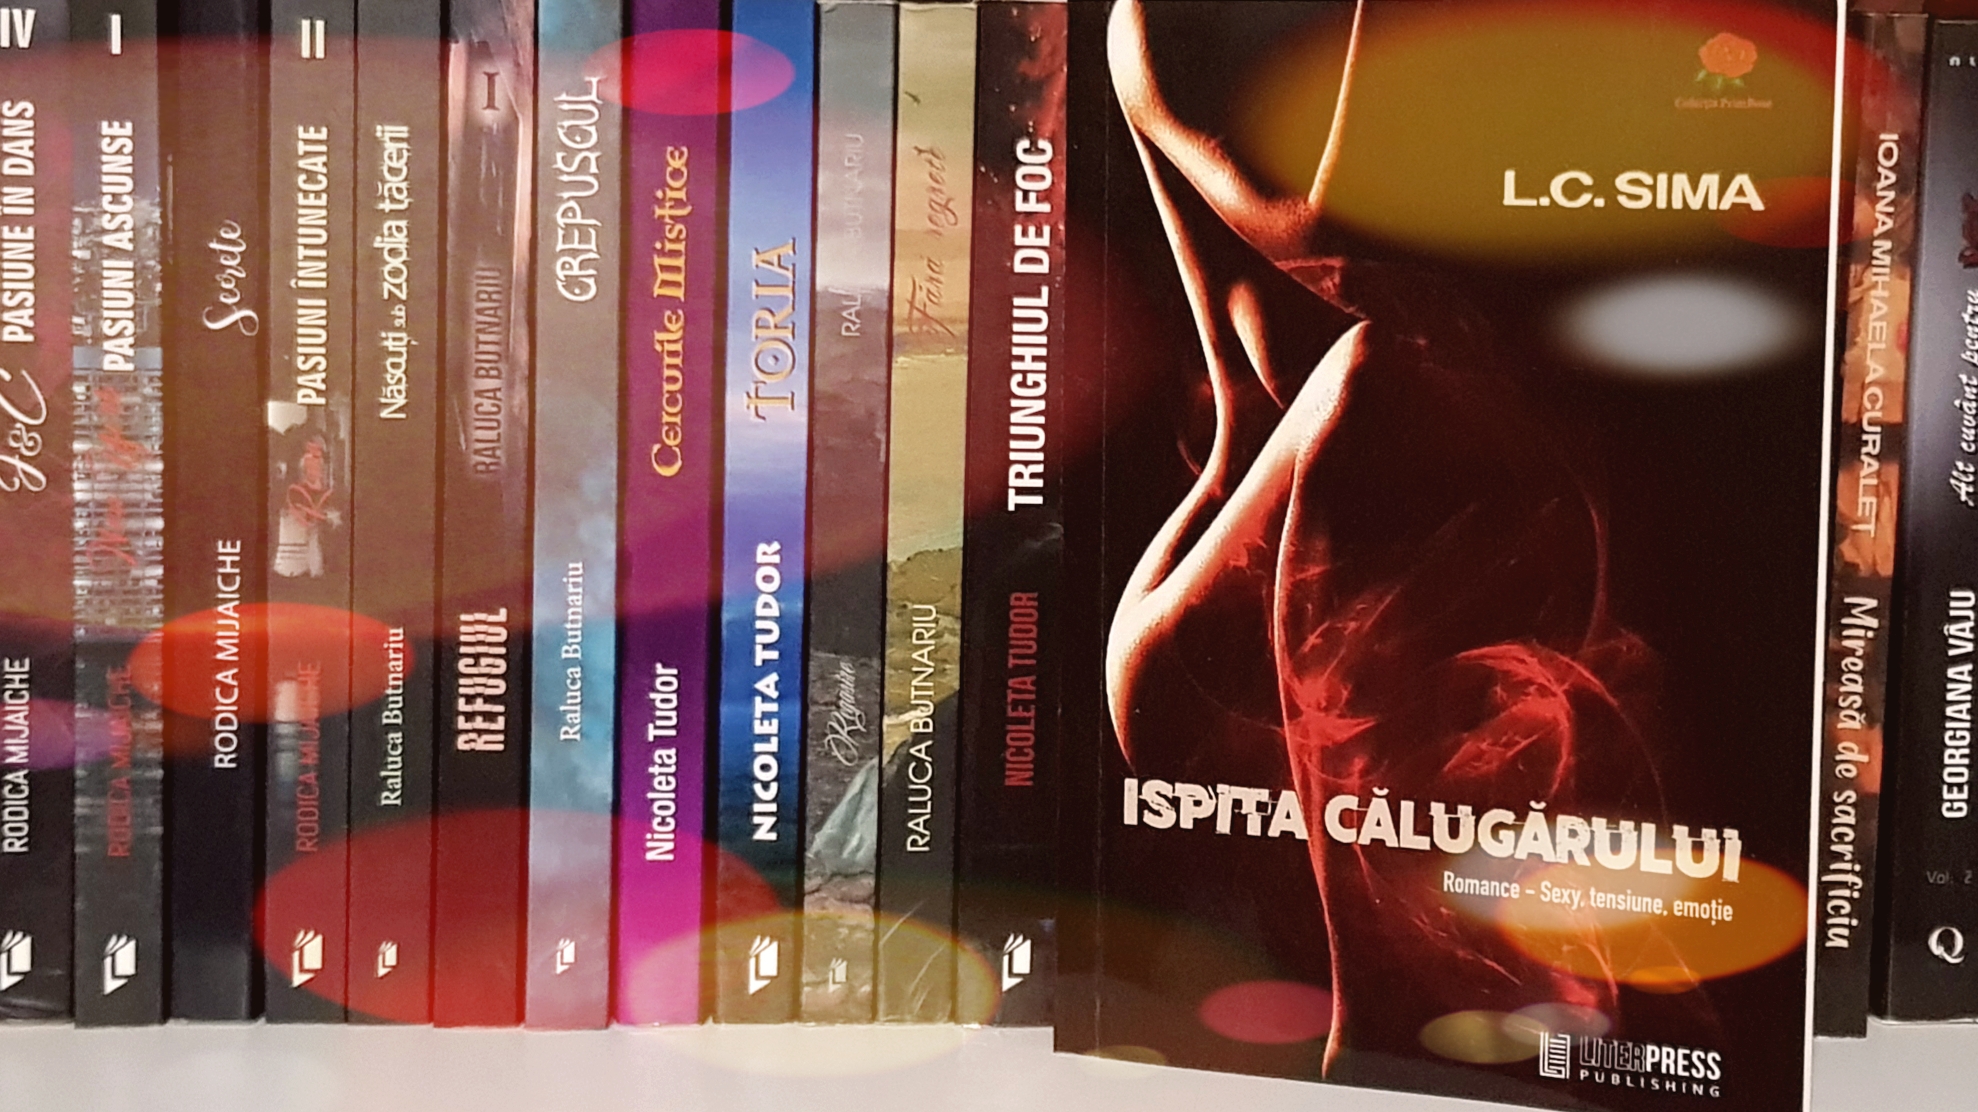 Ispita călugărului de L.C. Sima, editura LiterPress Publishing – recenzie